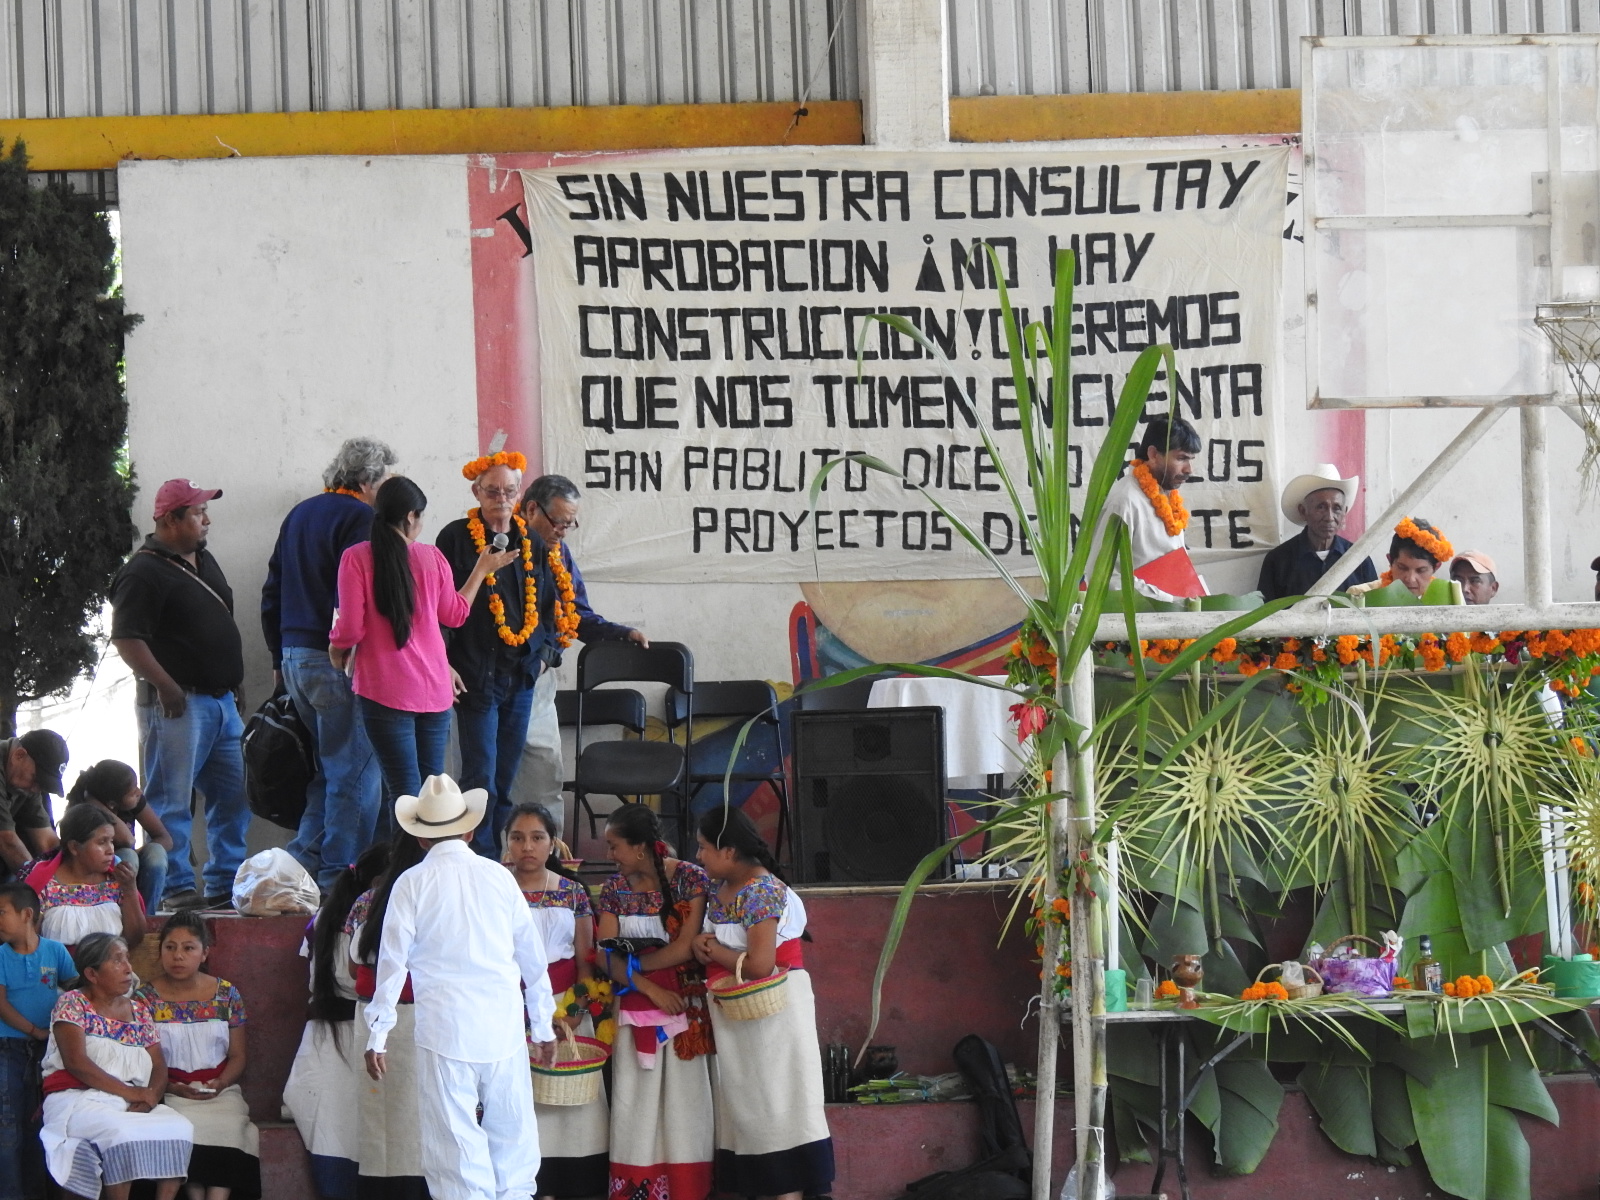 Se libra Sierra Norte de TransCanada, suspende gasoducto (Puebla)